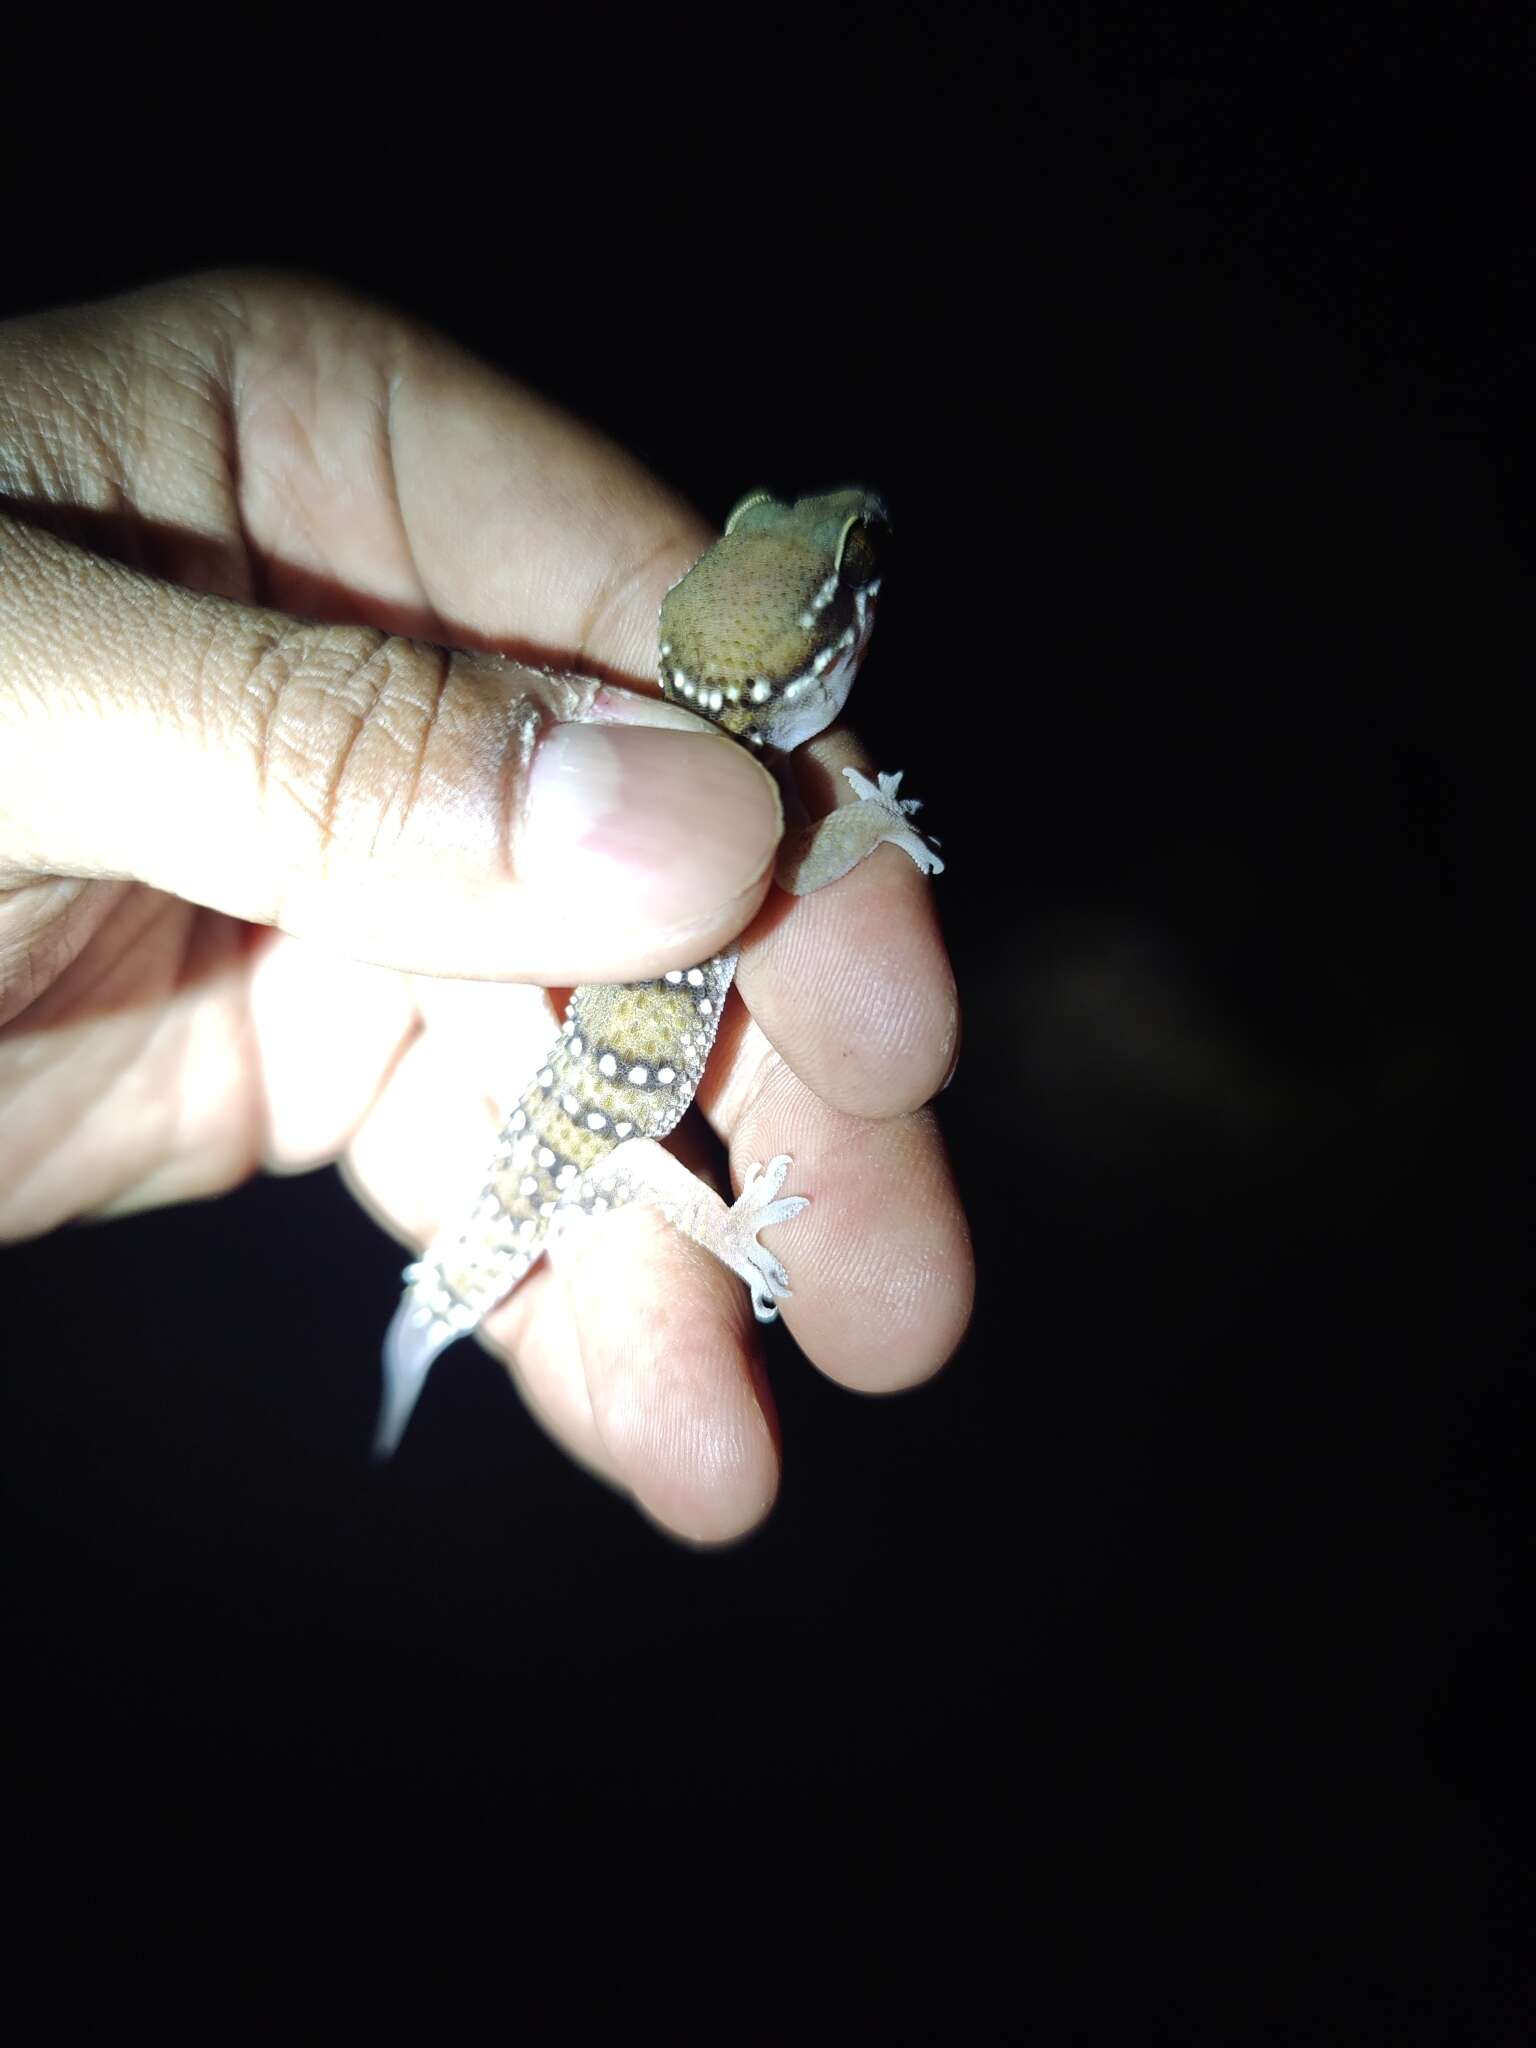 Image of Hemidactylus whitakeri Mirza, Gowande, Patil, Ambekar & Patel 2018